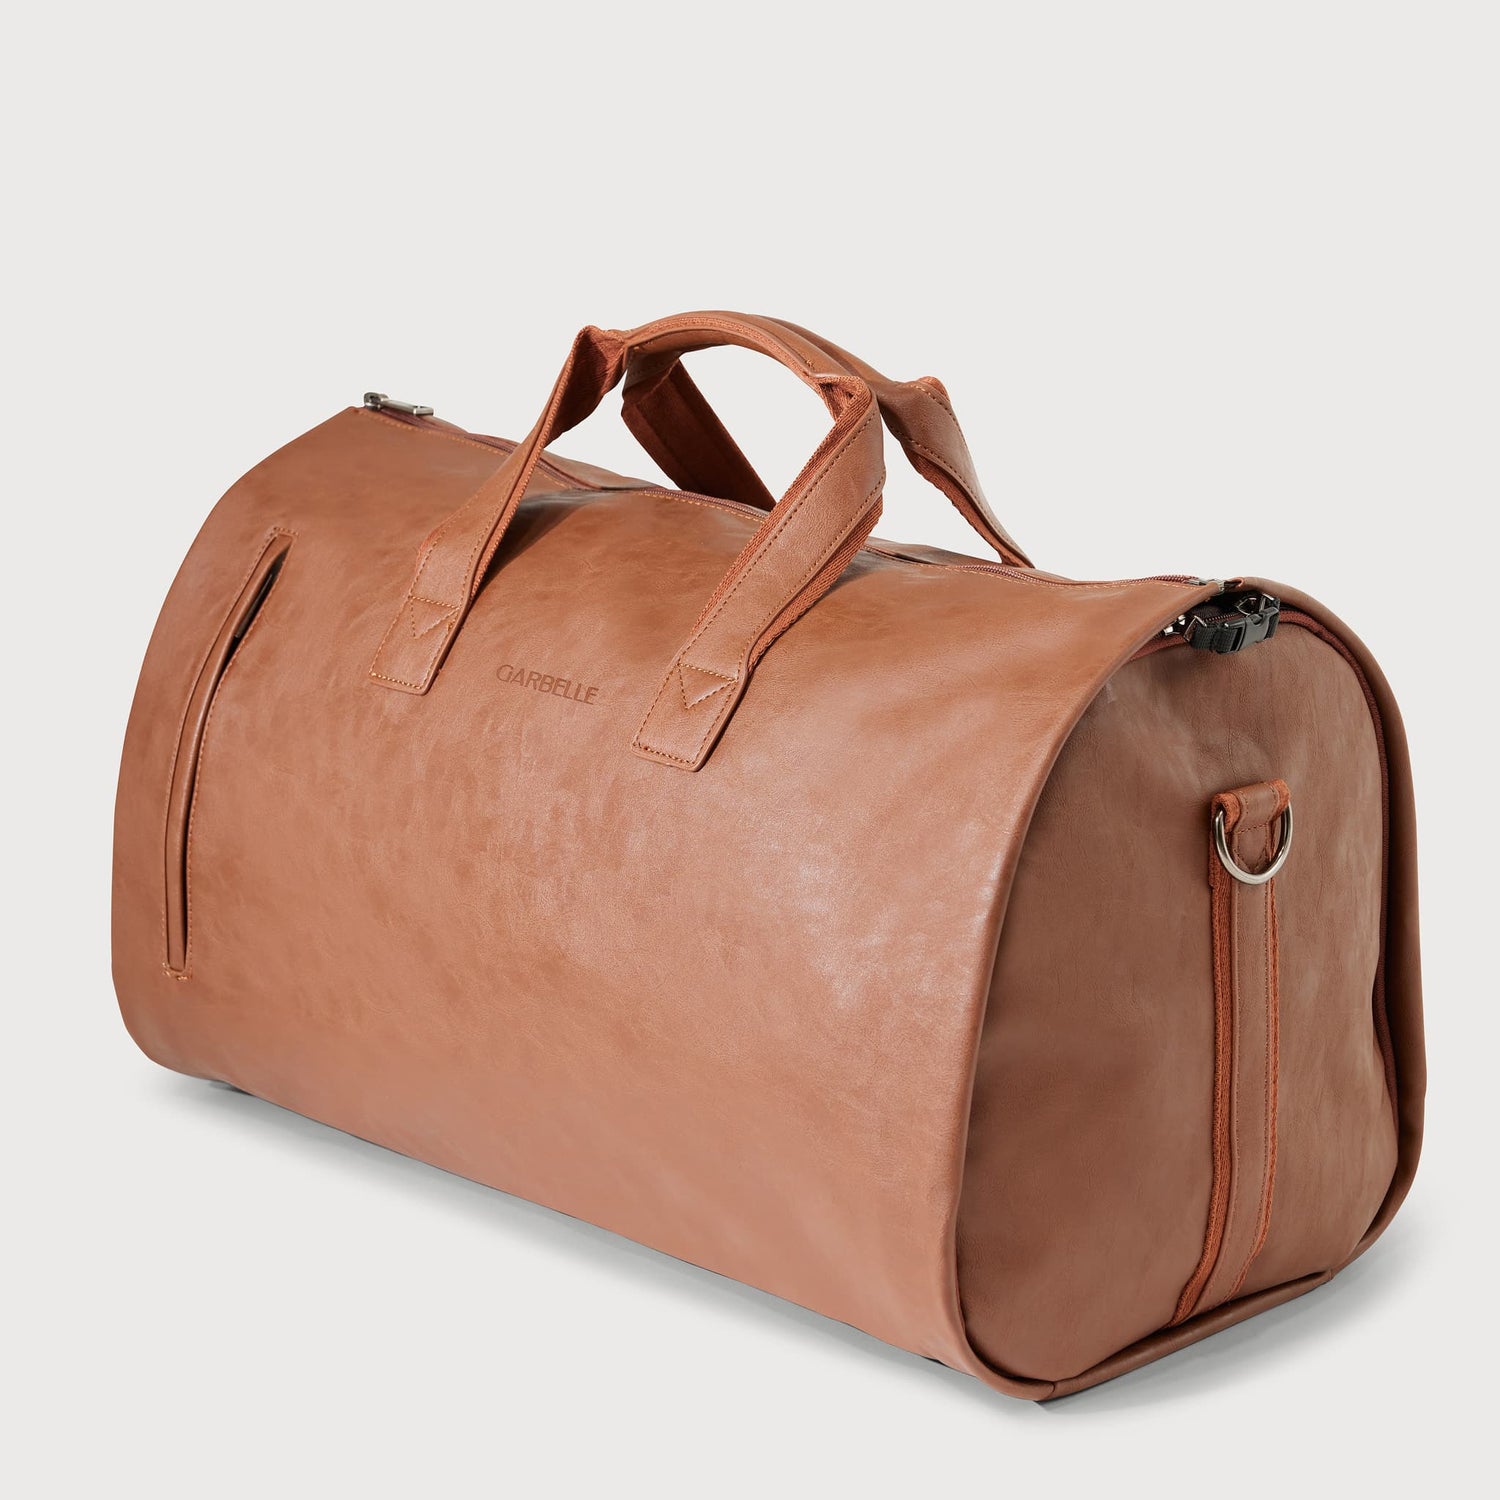 Des sacs de voyage en cuir pour la qualité et le style